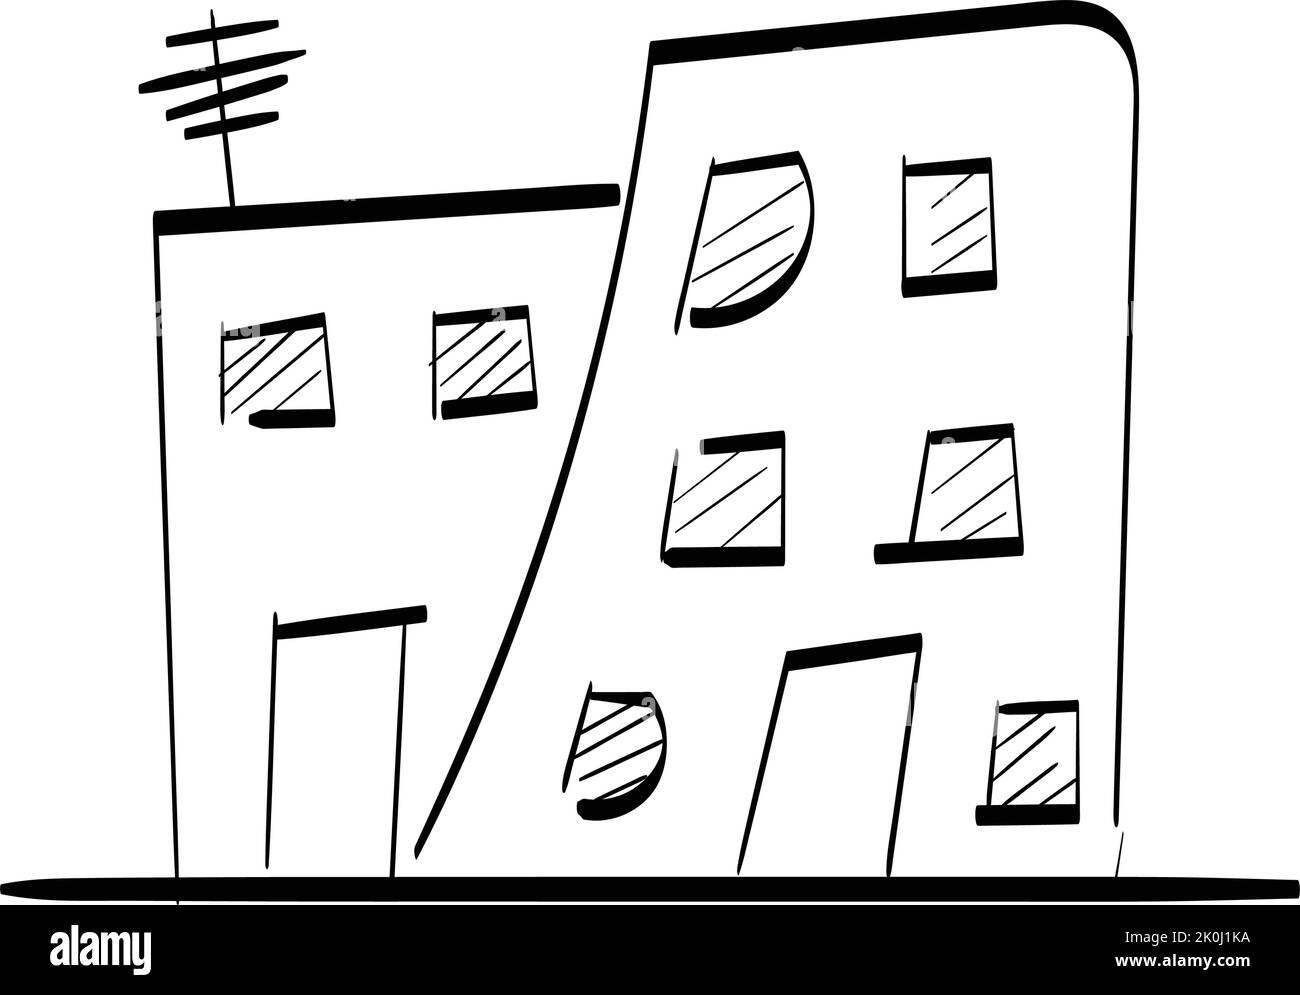 Handgezeichnetes Haus. Einfaches Vektorsymbol. Einfamilienhaus minimalistisches schwarzes lineares Design isoliert auf weißem Hintergrund. Stock Vektor